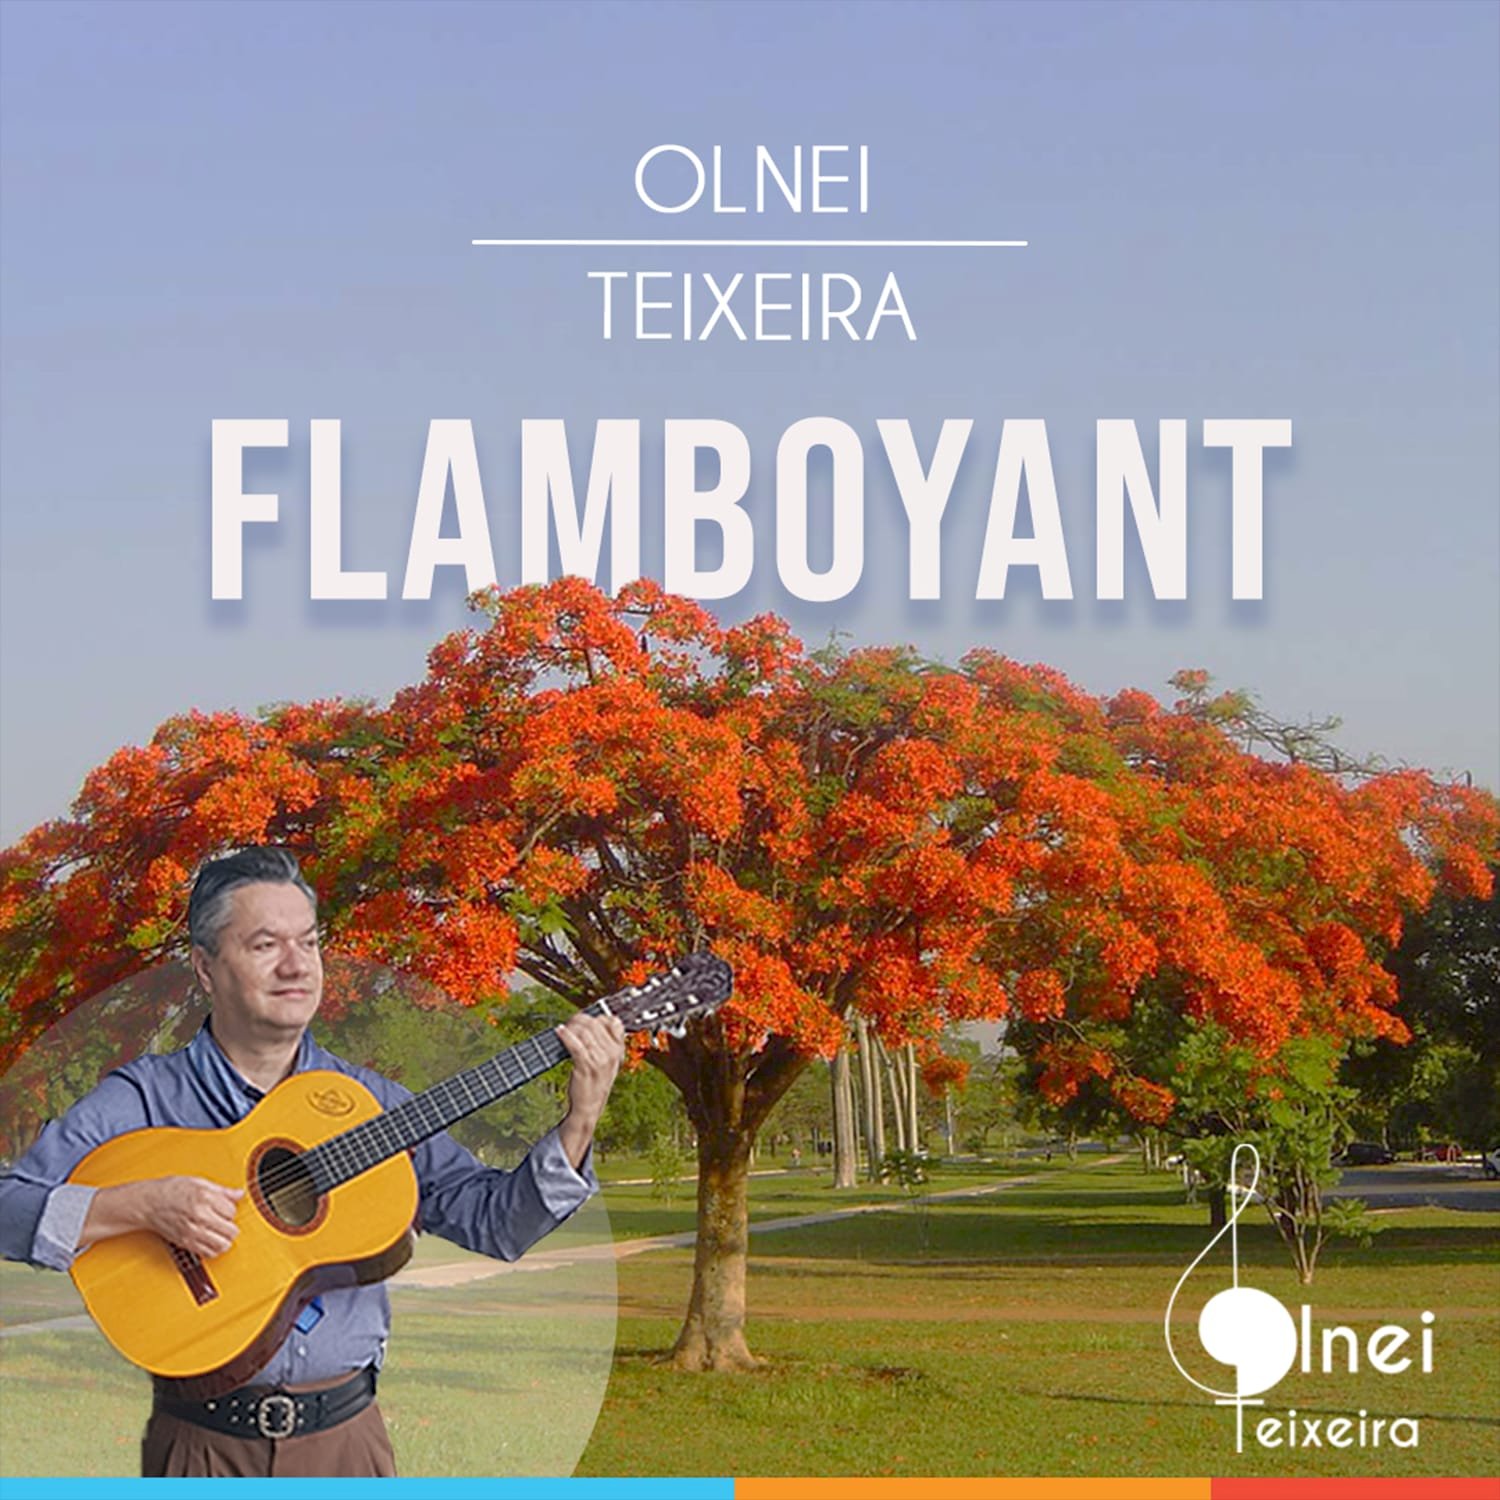 Gaúcho Olnei Teixeira homenageia a árvore Flamboyant em seu novo single